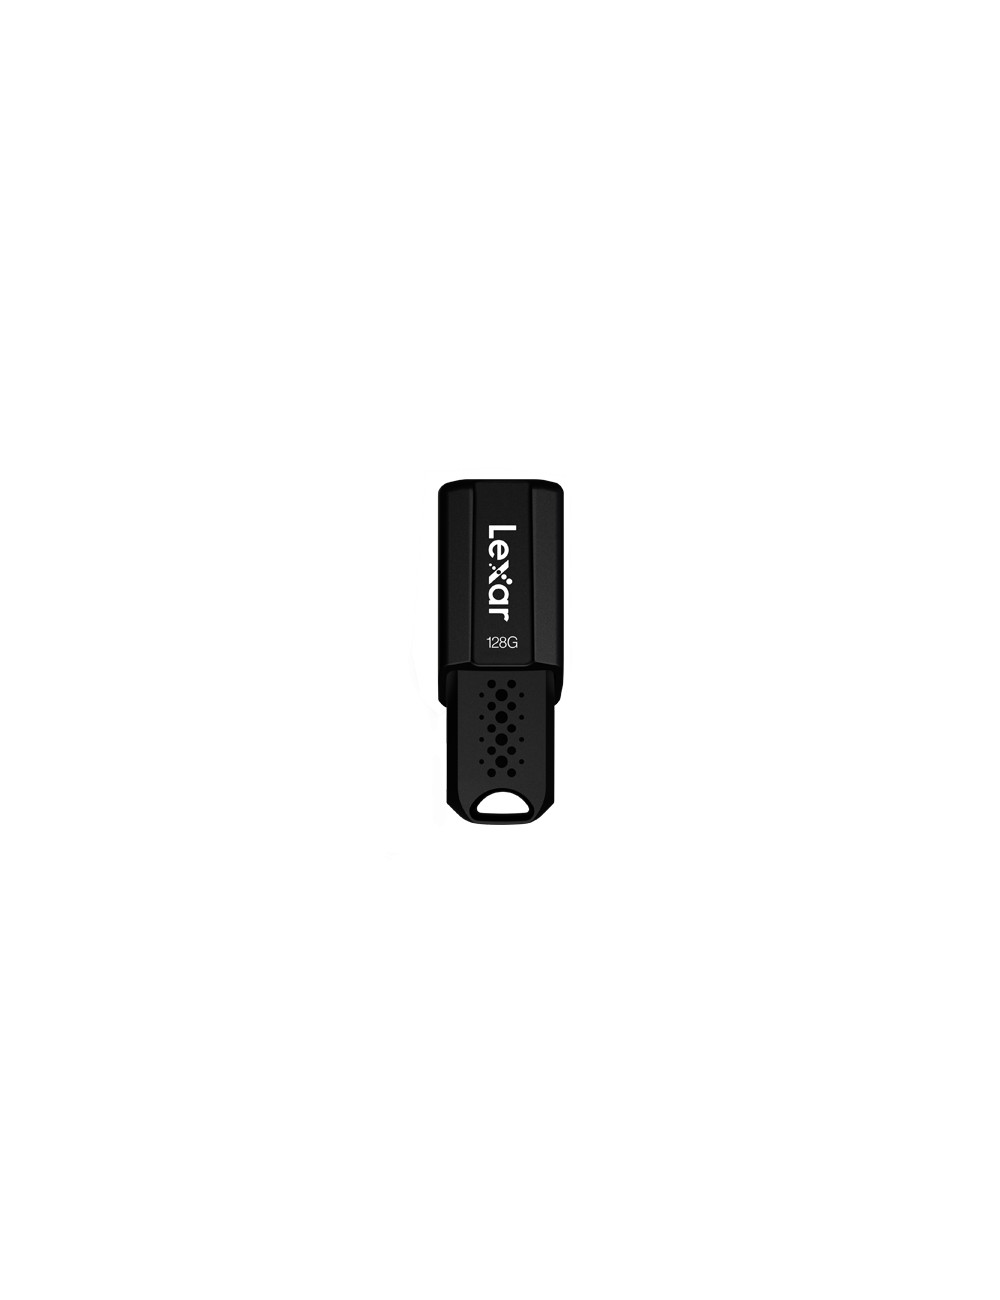 Lexar | Flash drive | JumpDrive S80 | 128 GB | USB 3.1 | Black